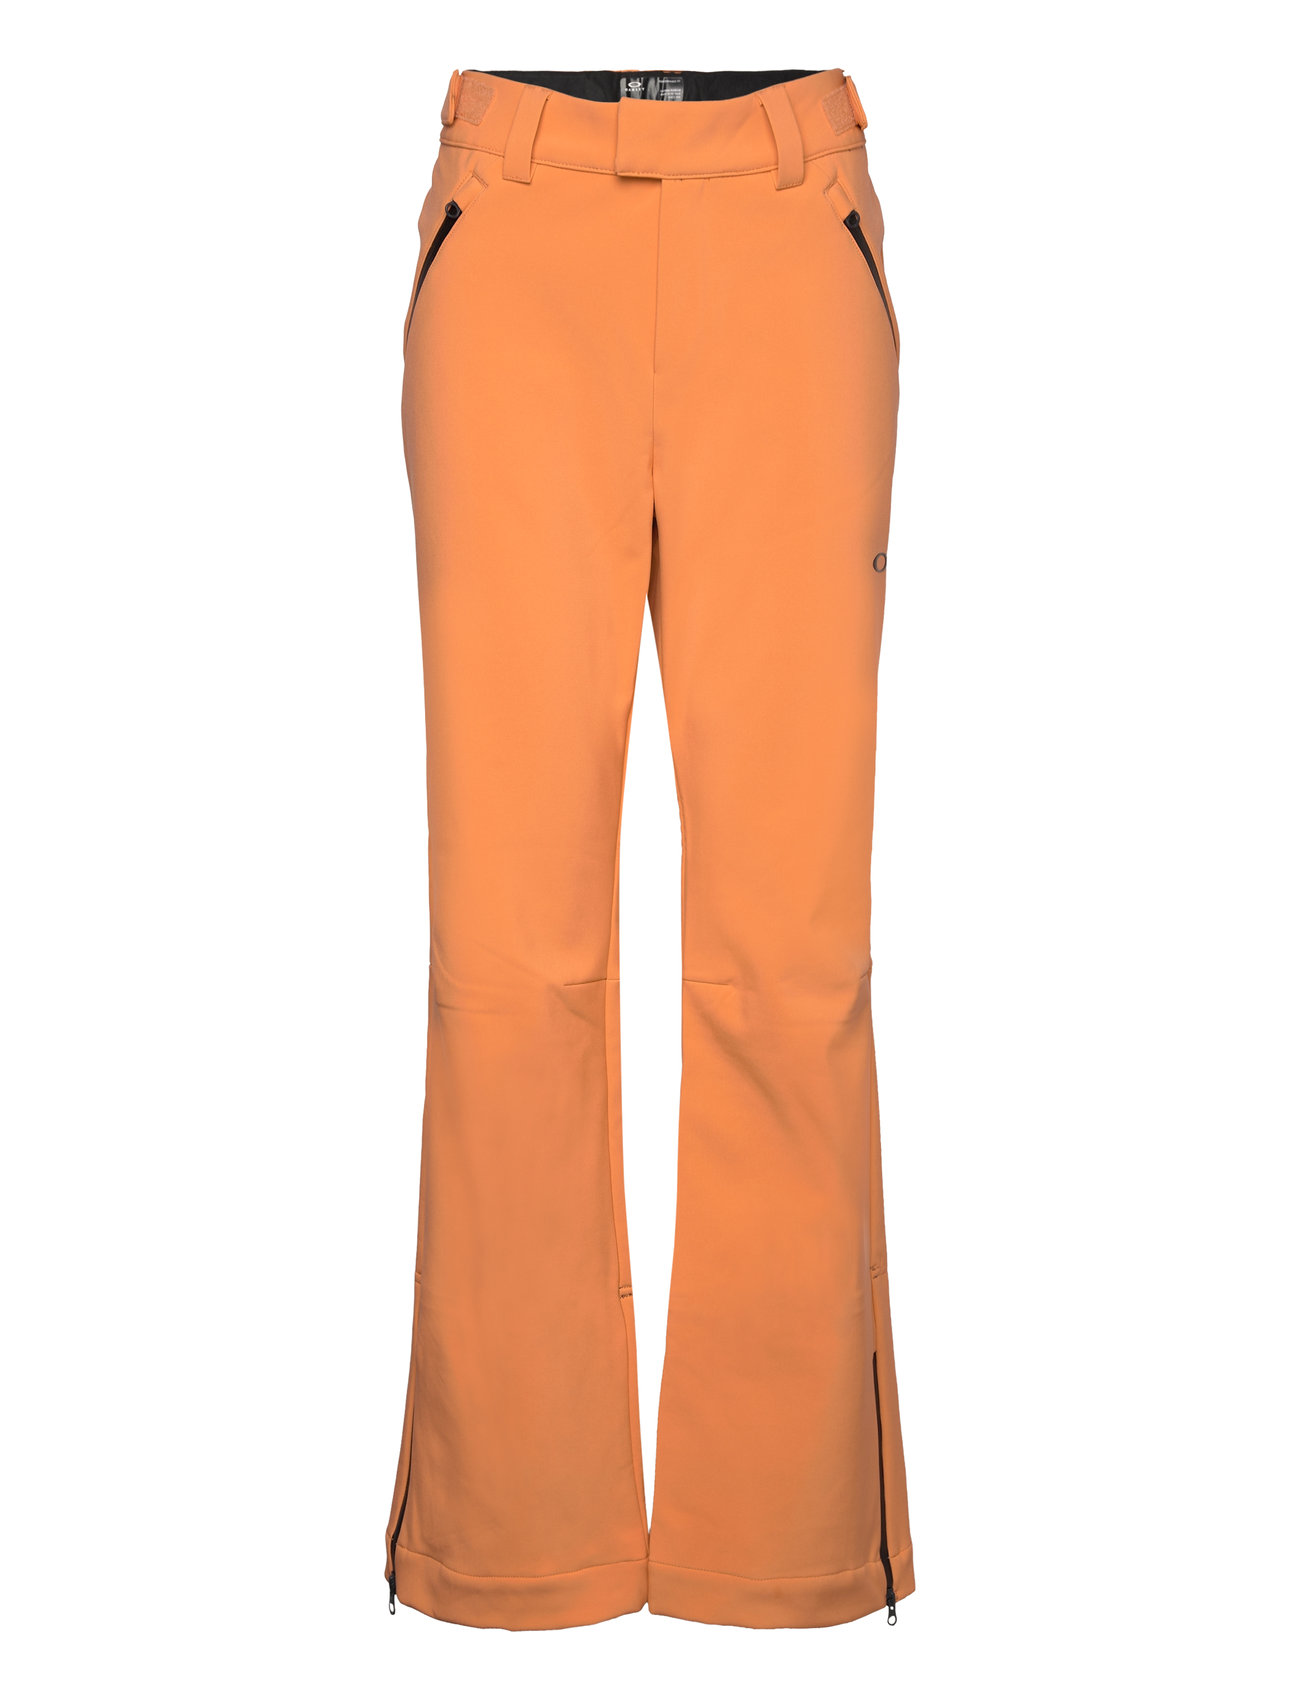 Women's Softshell Pant Bottoms Sport Pants Orange Oakley Sports